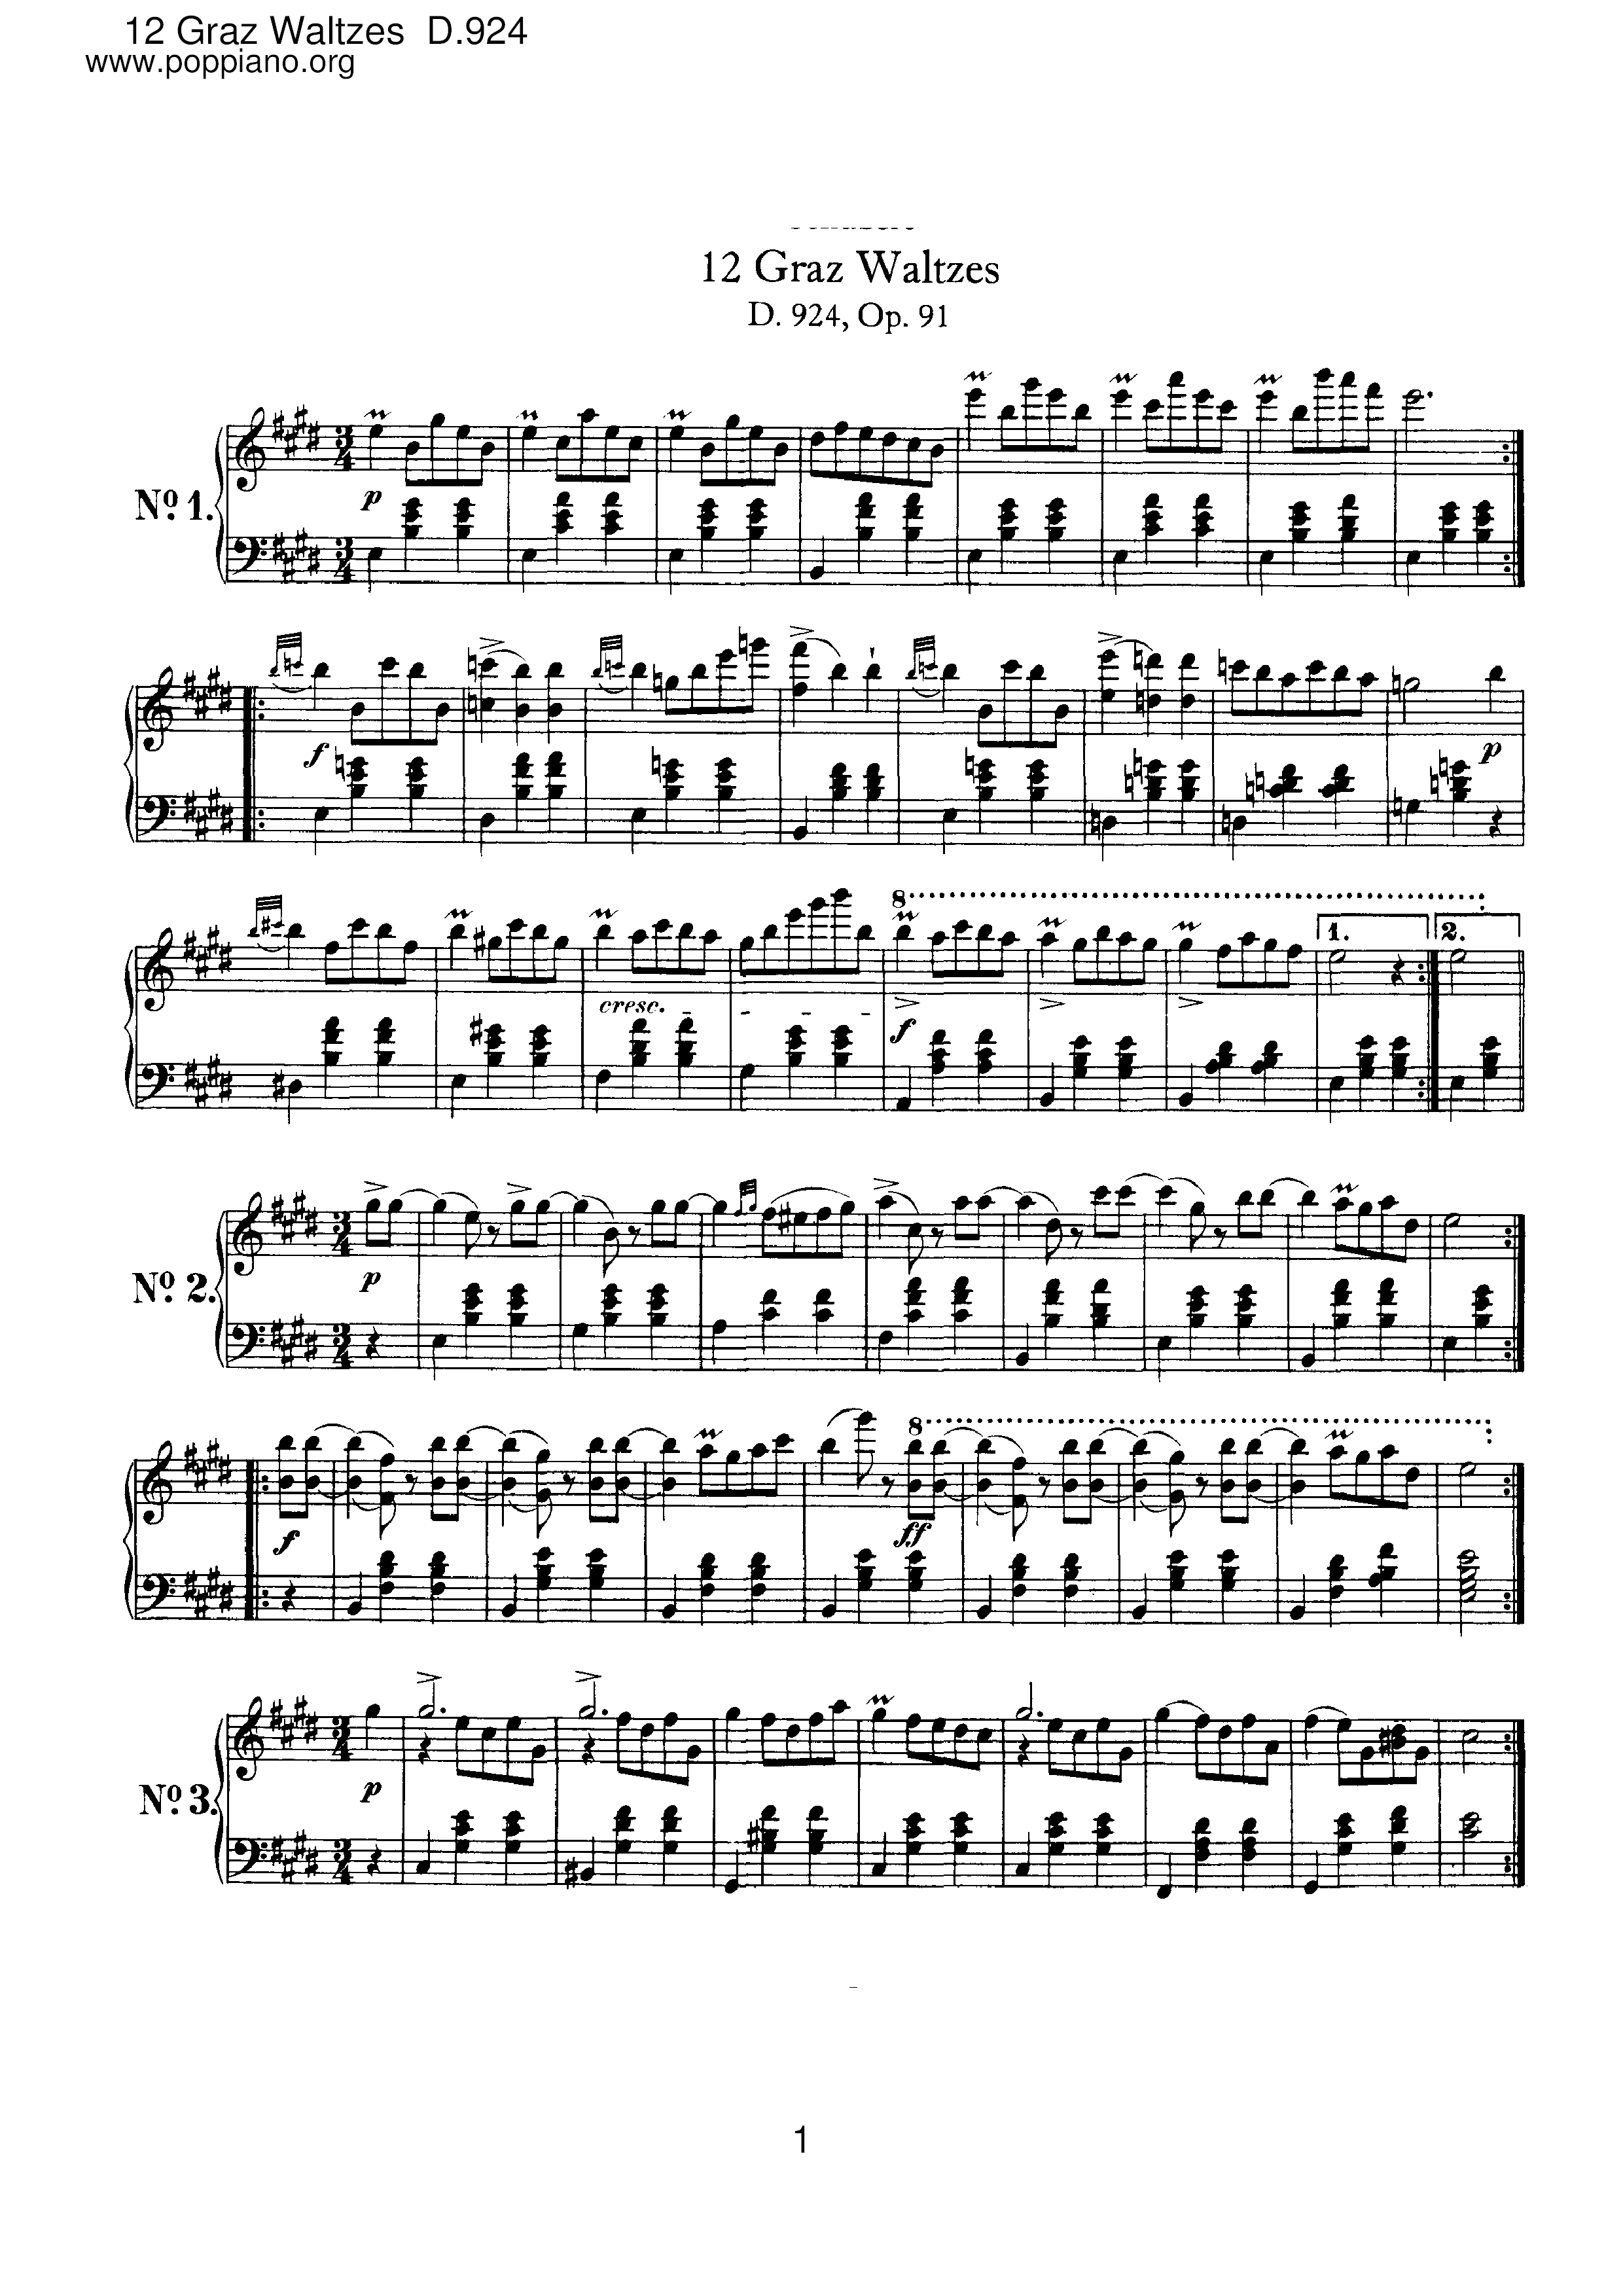 12 Graz Waltzes, D.924 (Op.91)琴谱